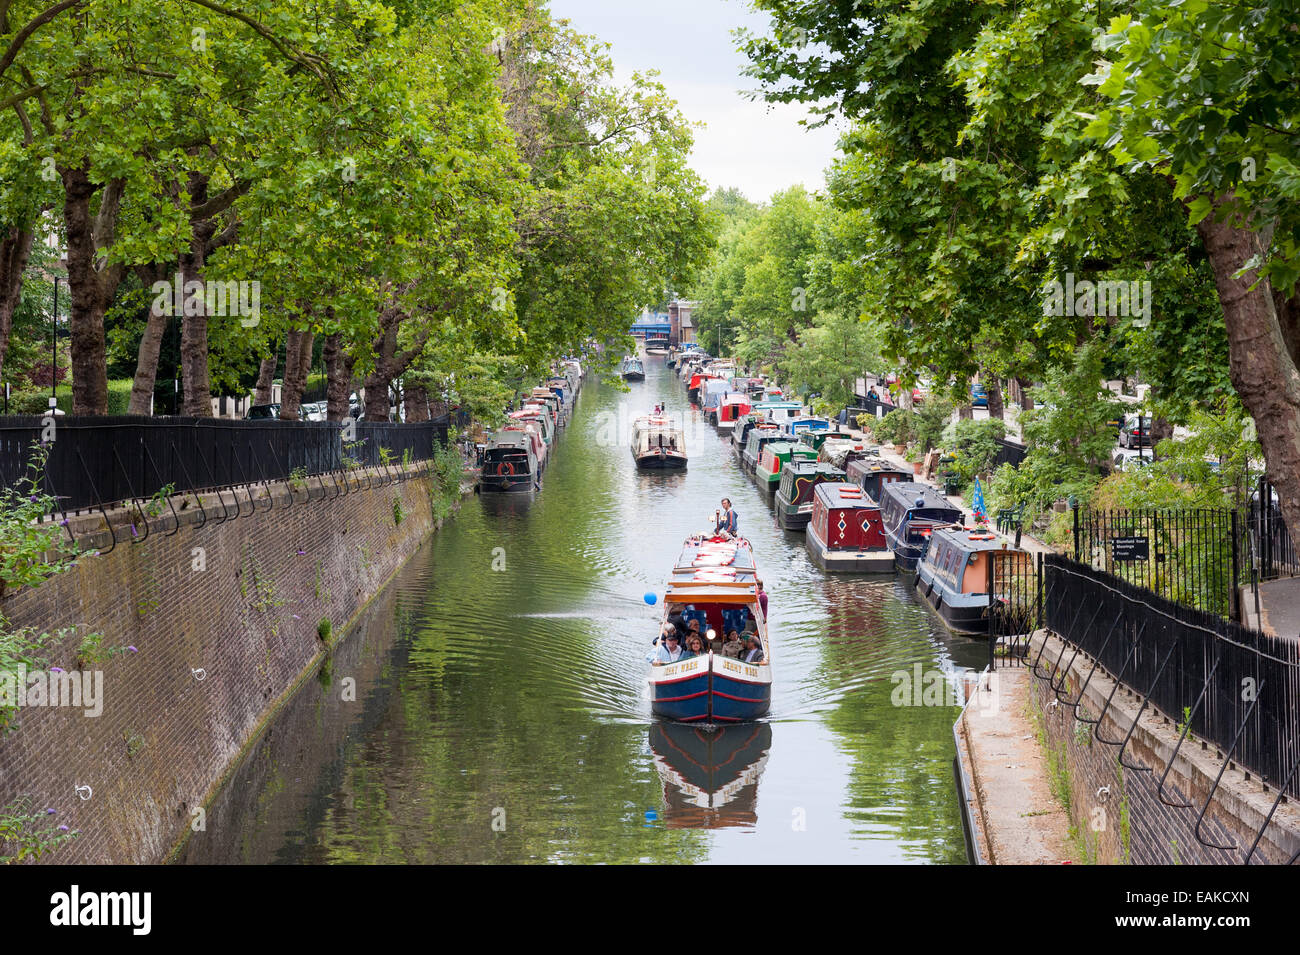 La piccola Venezia sul Regent's Canal, London, England, Regno Unito Foto Stock